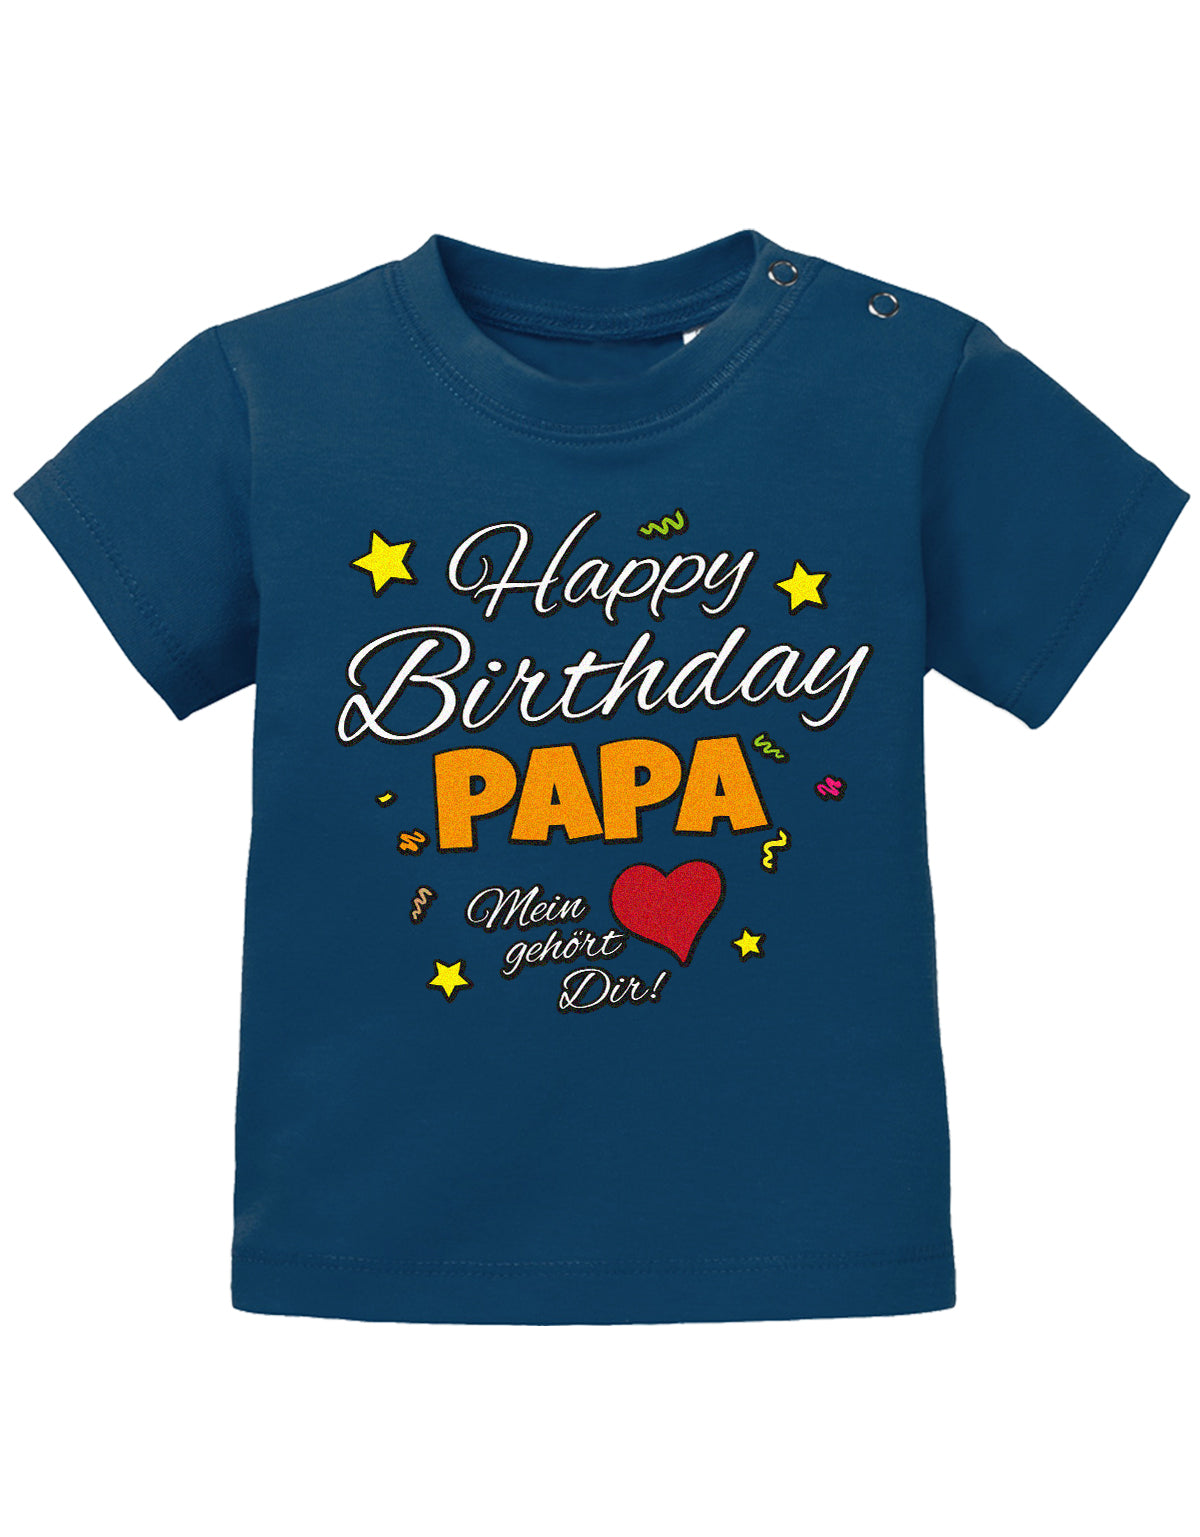 Papa Spruch Baby Shirt. Happy Birthday, Papa, mein Herz gehört Dir. Navy